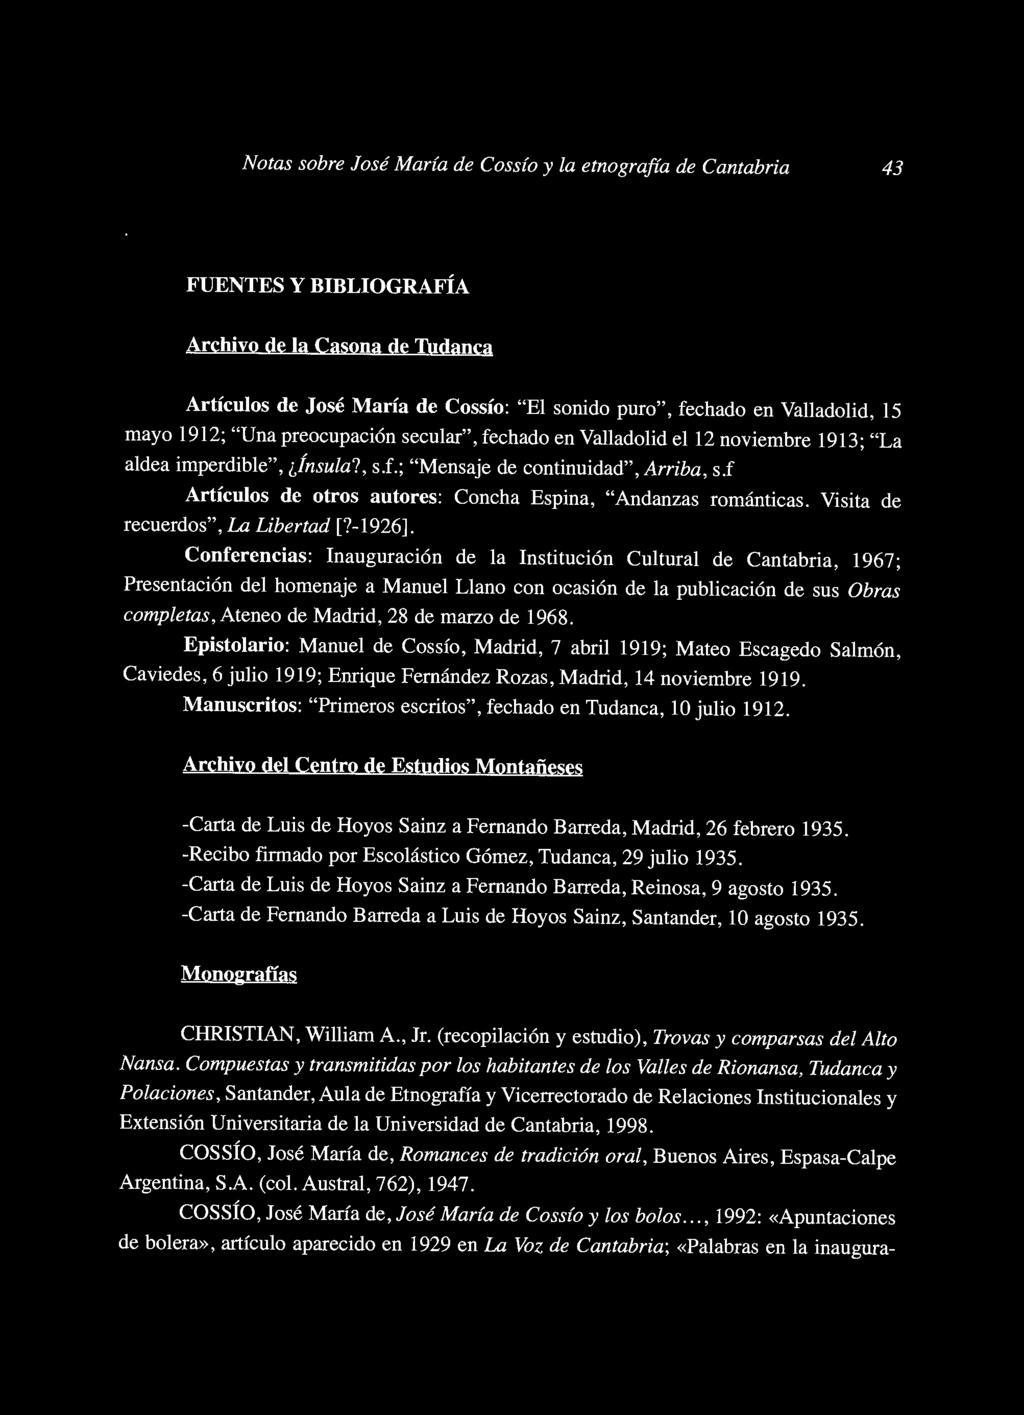 f Artículos de otros autores: Concha Espina, "Andanzas románticas. Visita de recuerdos", La Libertad [?-1926].